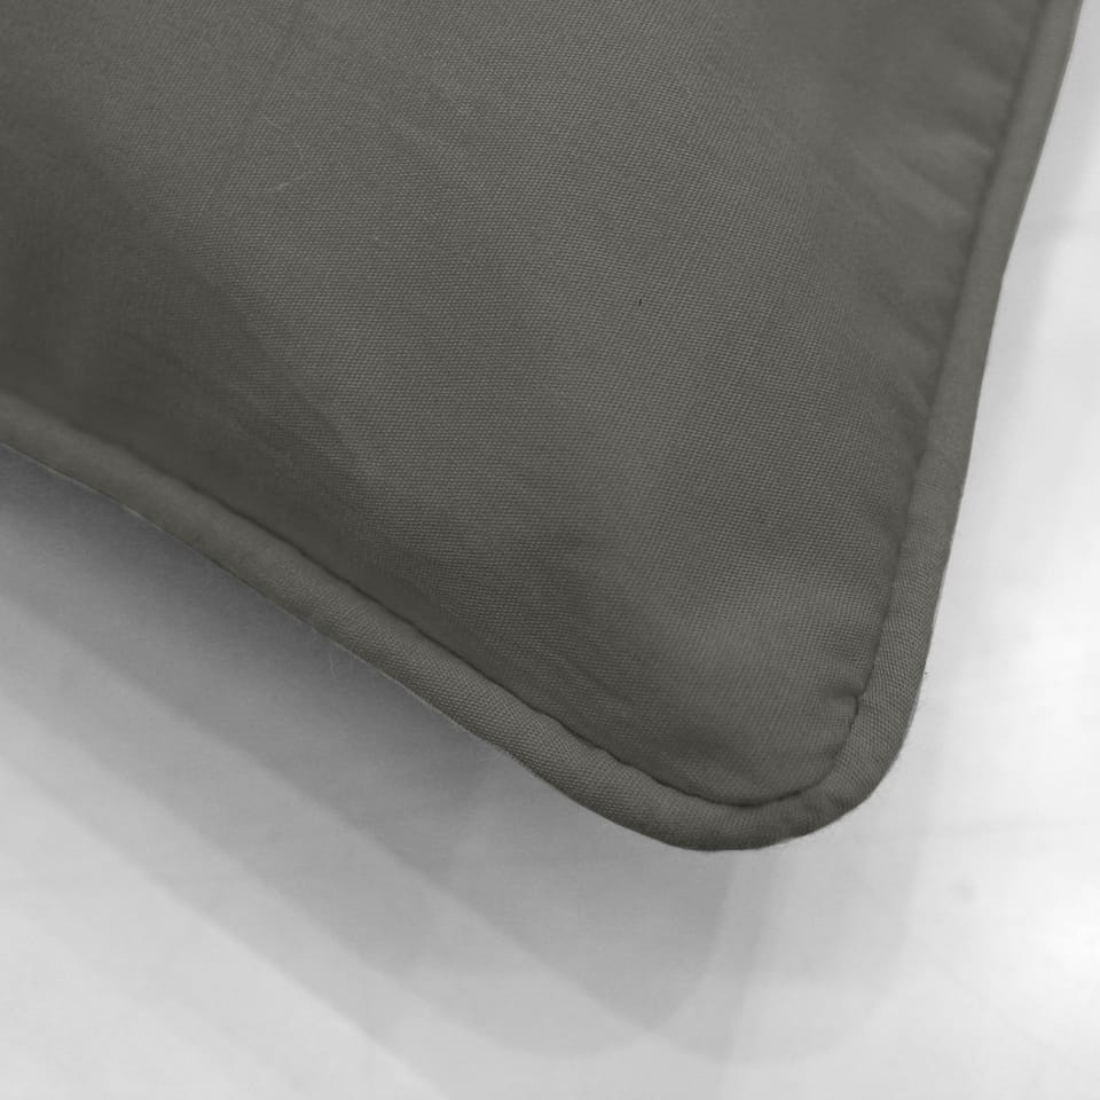 Plain Cotton Decorative Cushion Cover 7 Pcs online at best prices